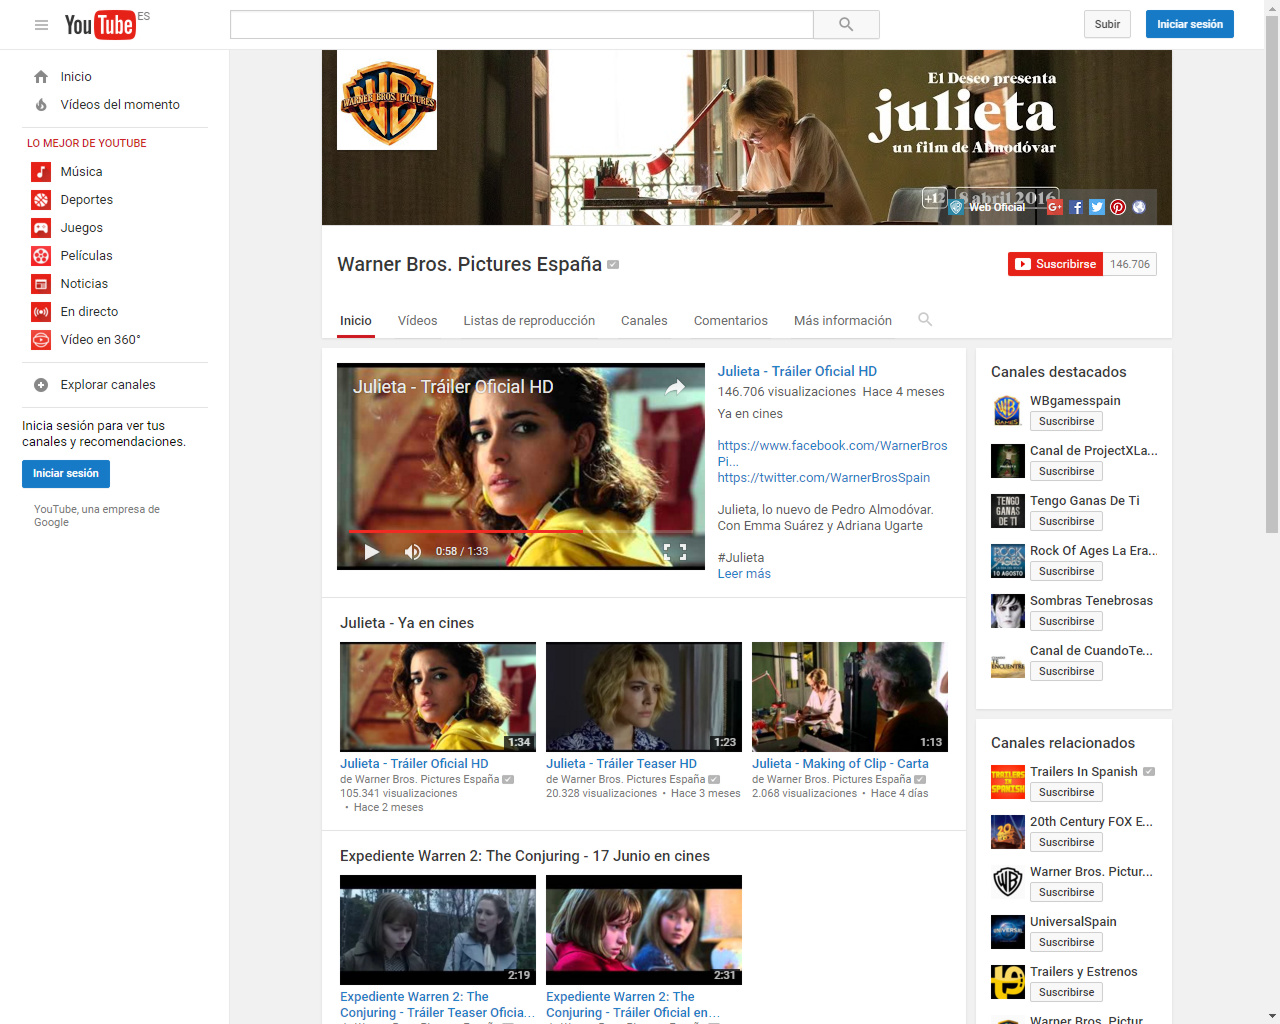 Presentación para escritorio del canal de YouTube de Warner Bros. Pictures España durante la promoción de "Julieta"